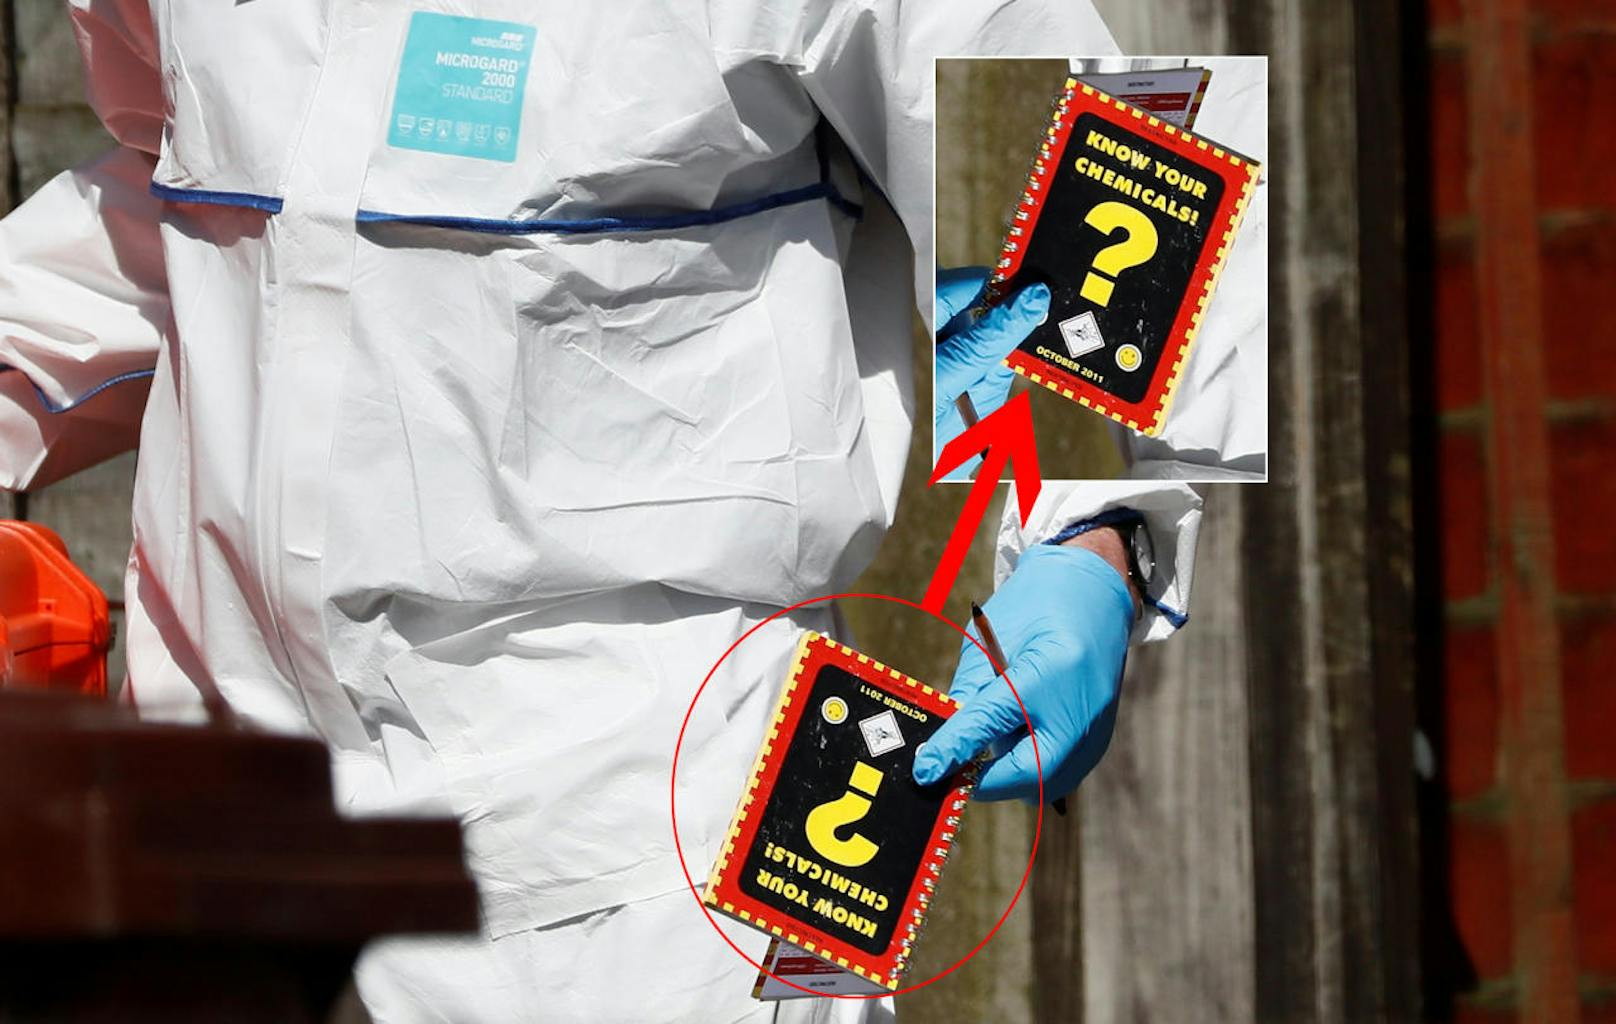 Bei der Durchsuchung des Hauses des Attentäters wurde ein makabres Büchlein gefunden: "Know your Chemicals" steht darauf: "Kenne deine Chemikalien"